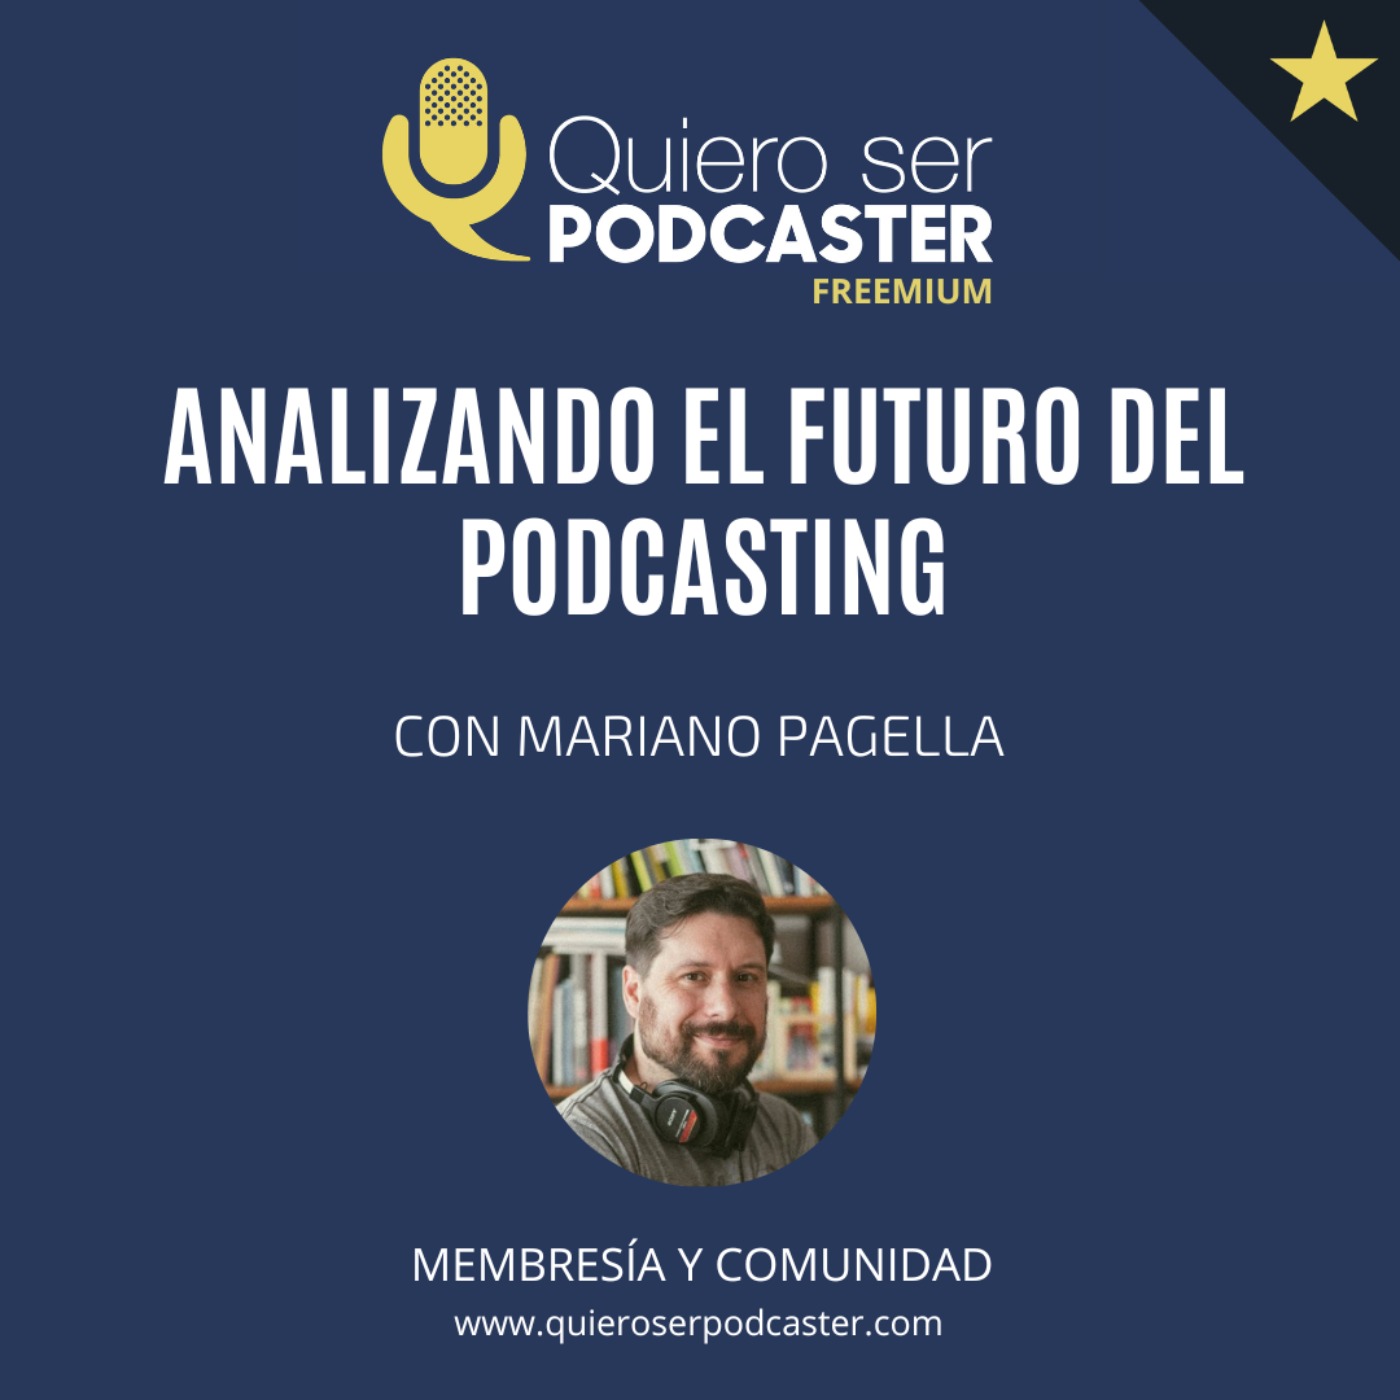 Analizando el futuro del podcasting, con Mariano Pagella @mmarianop de @AdondeMedia